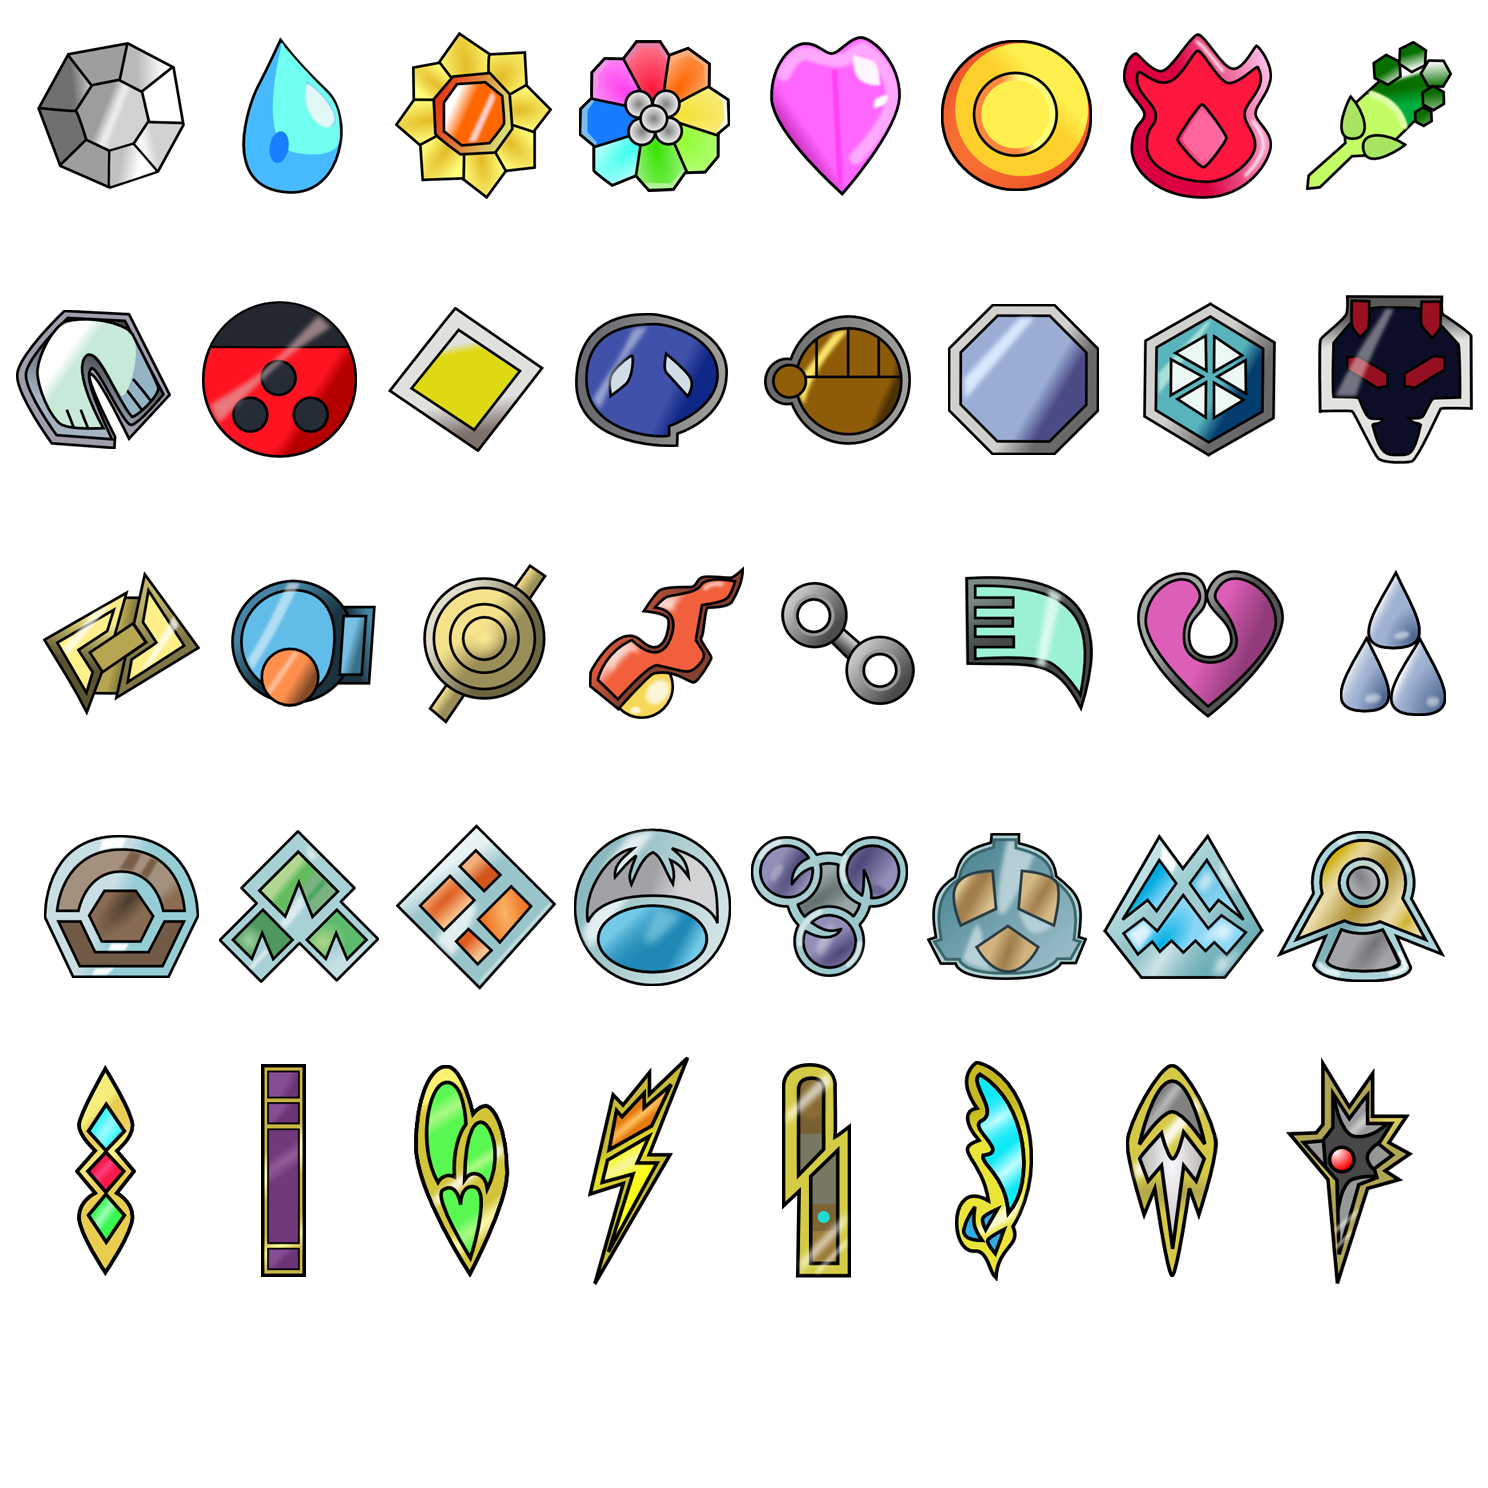 Pokémon League Badges